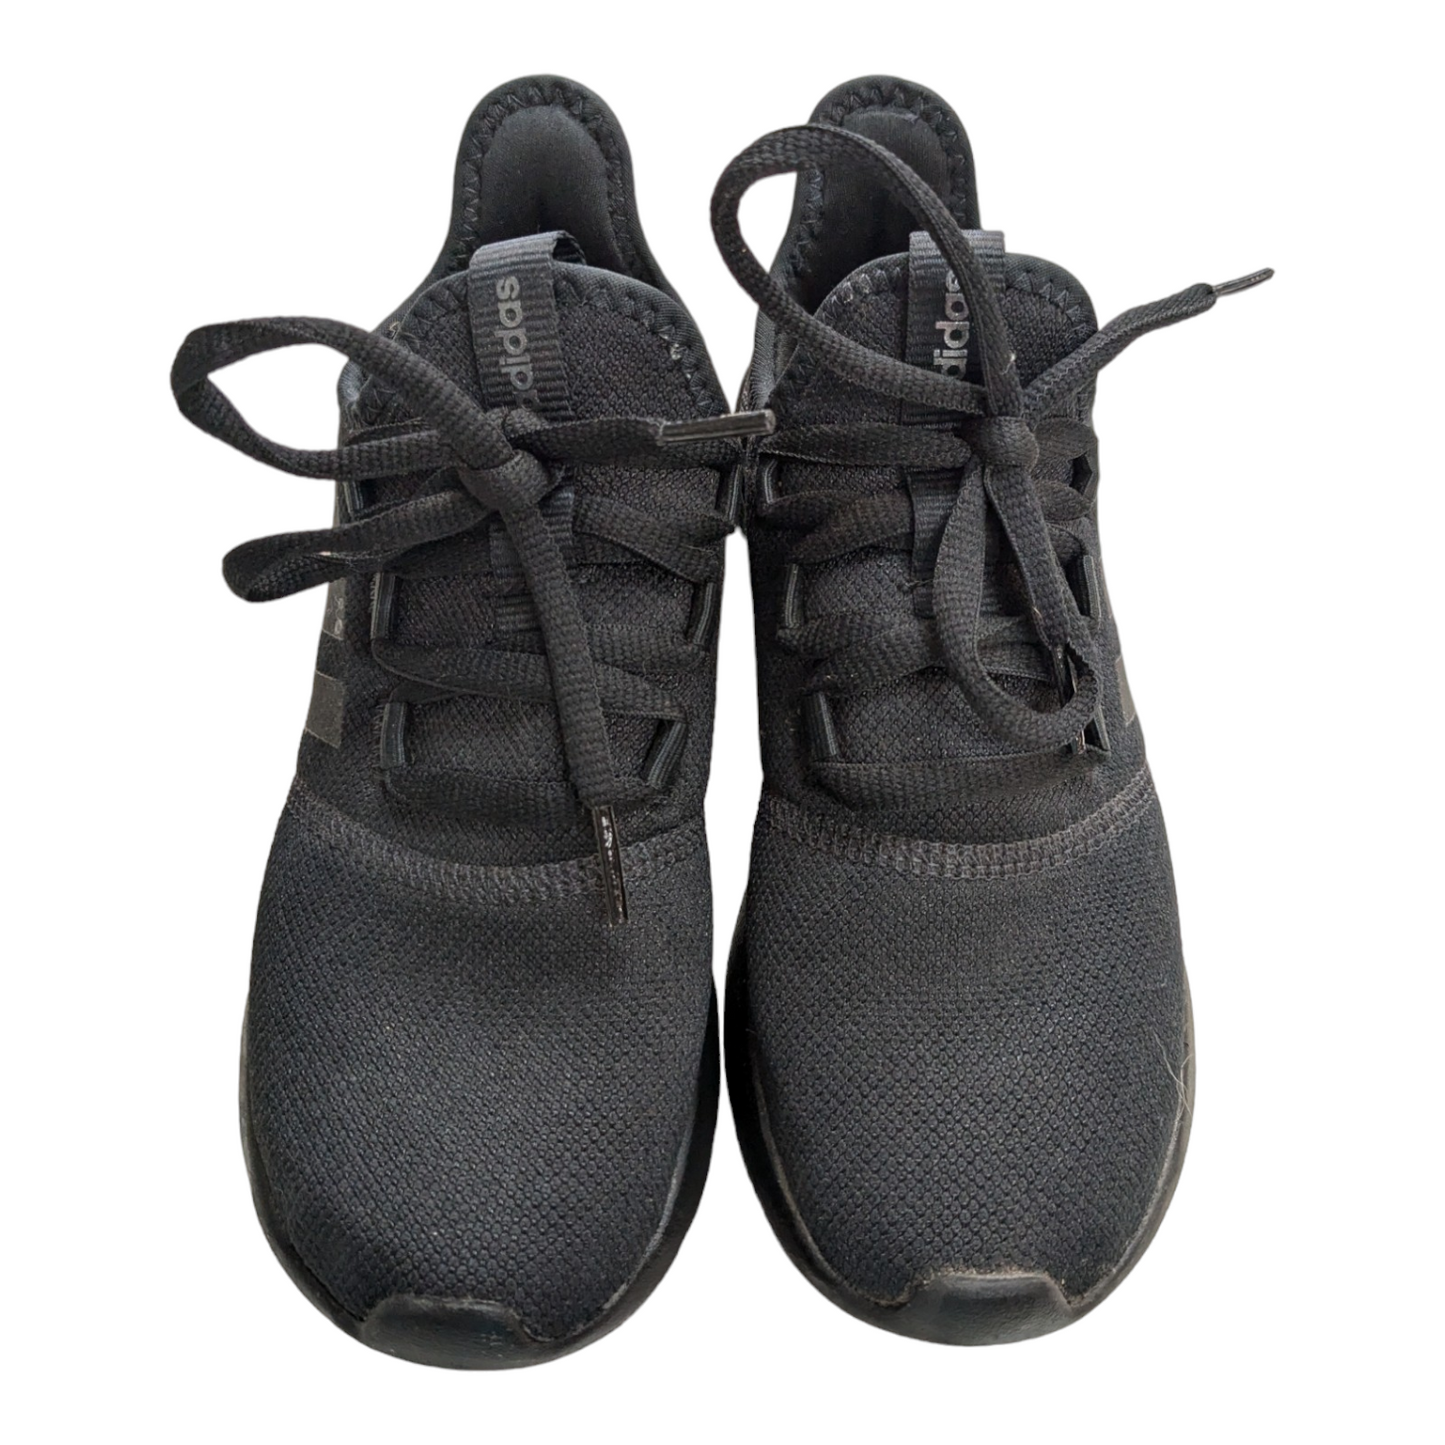 Black Shoes Athletic Adidas, Size 5.5